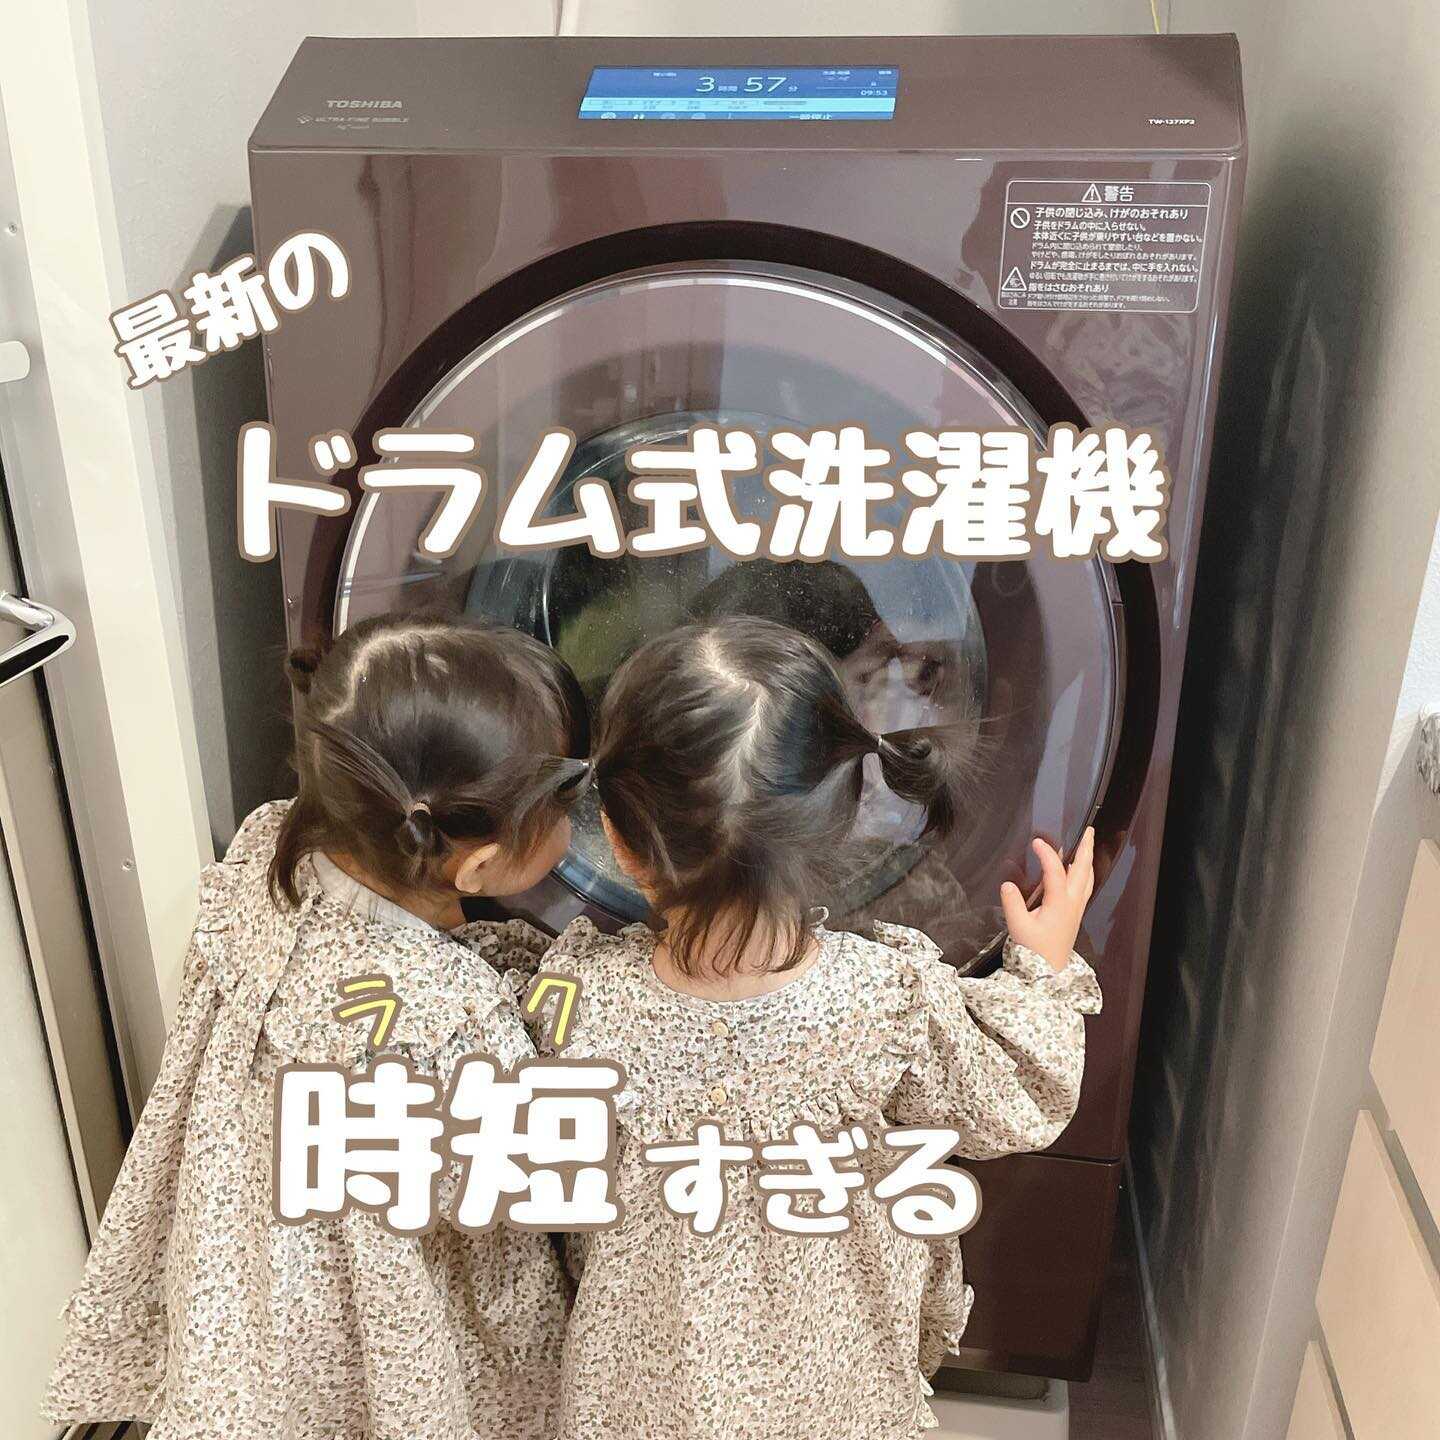 TOSHIBA/東芝 ZABOON/ザブーン ドラム式洗濯乾燥機 TW-Z9100L 洗濯9kg